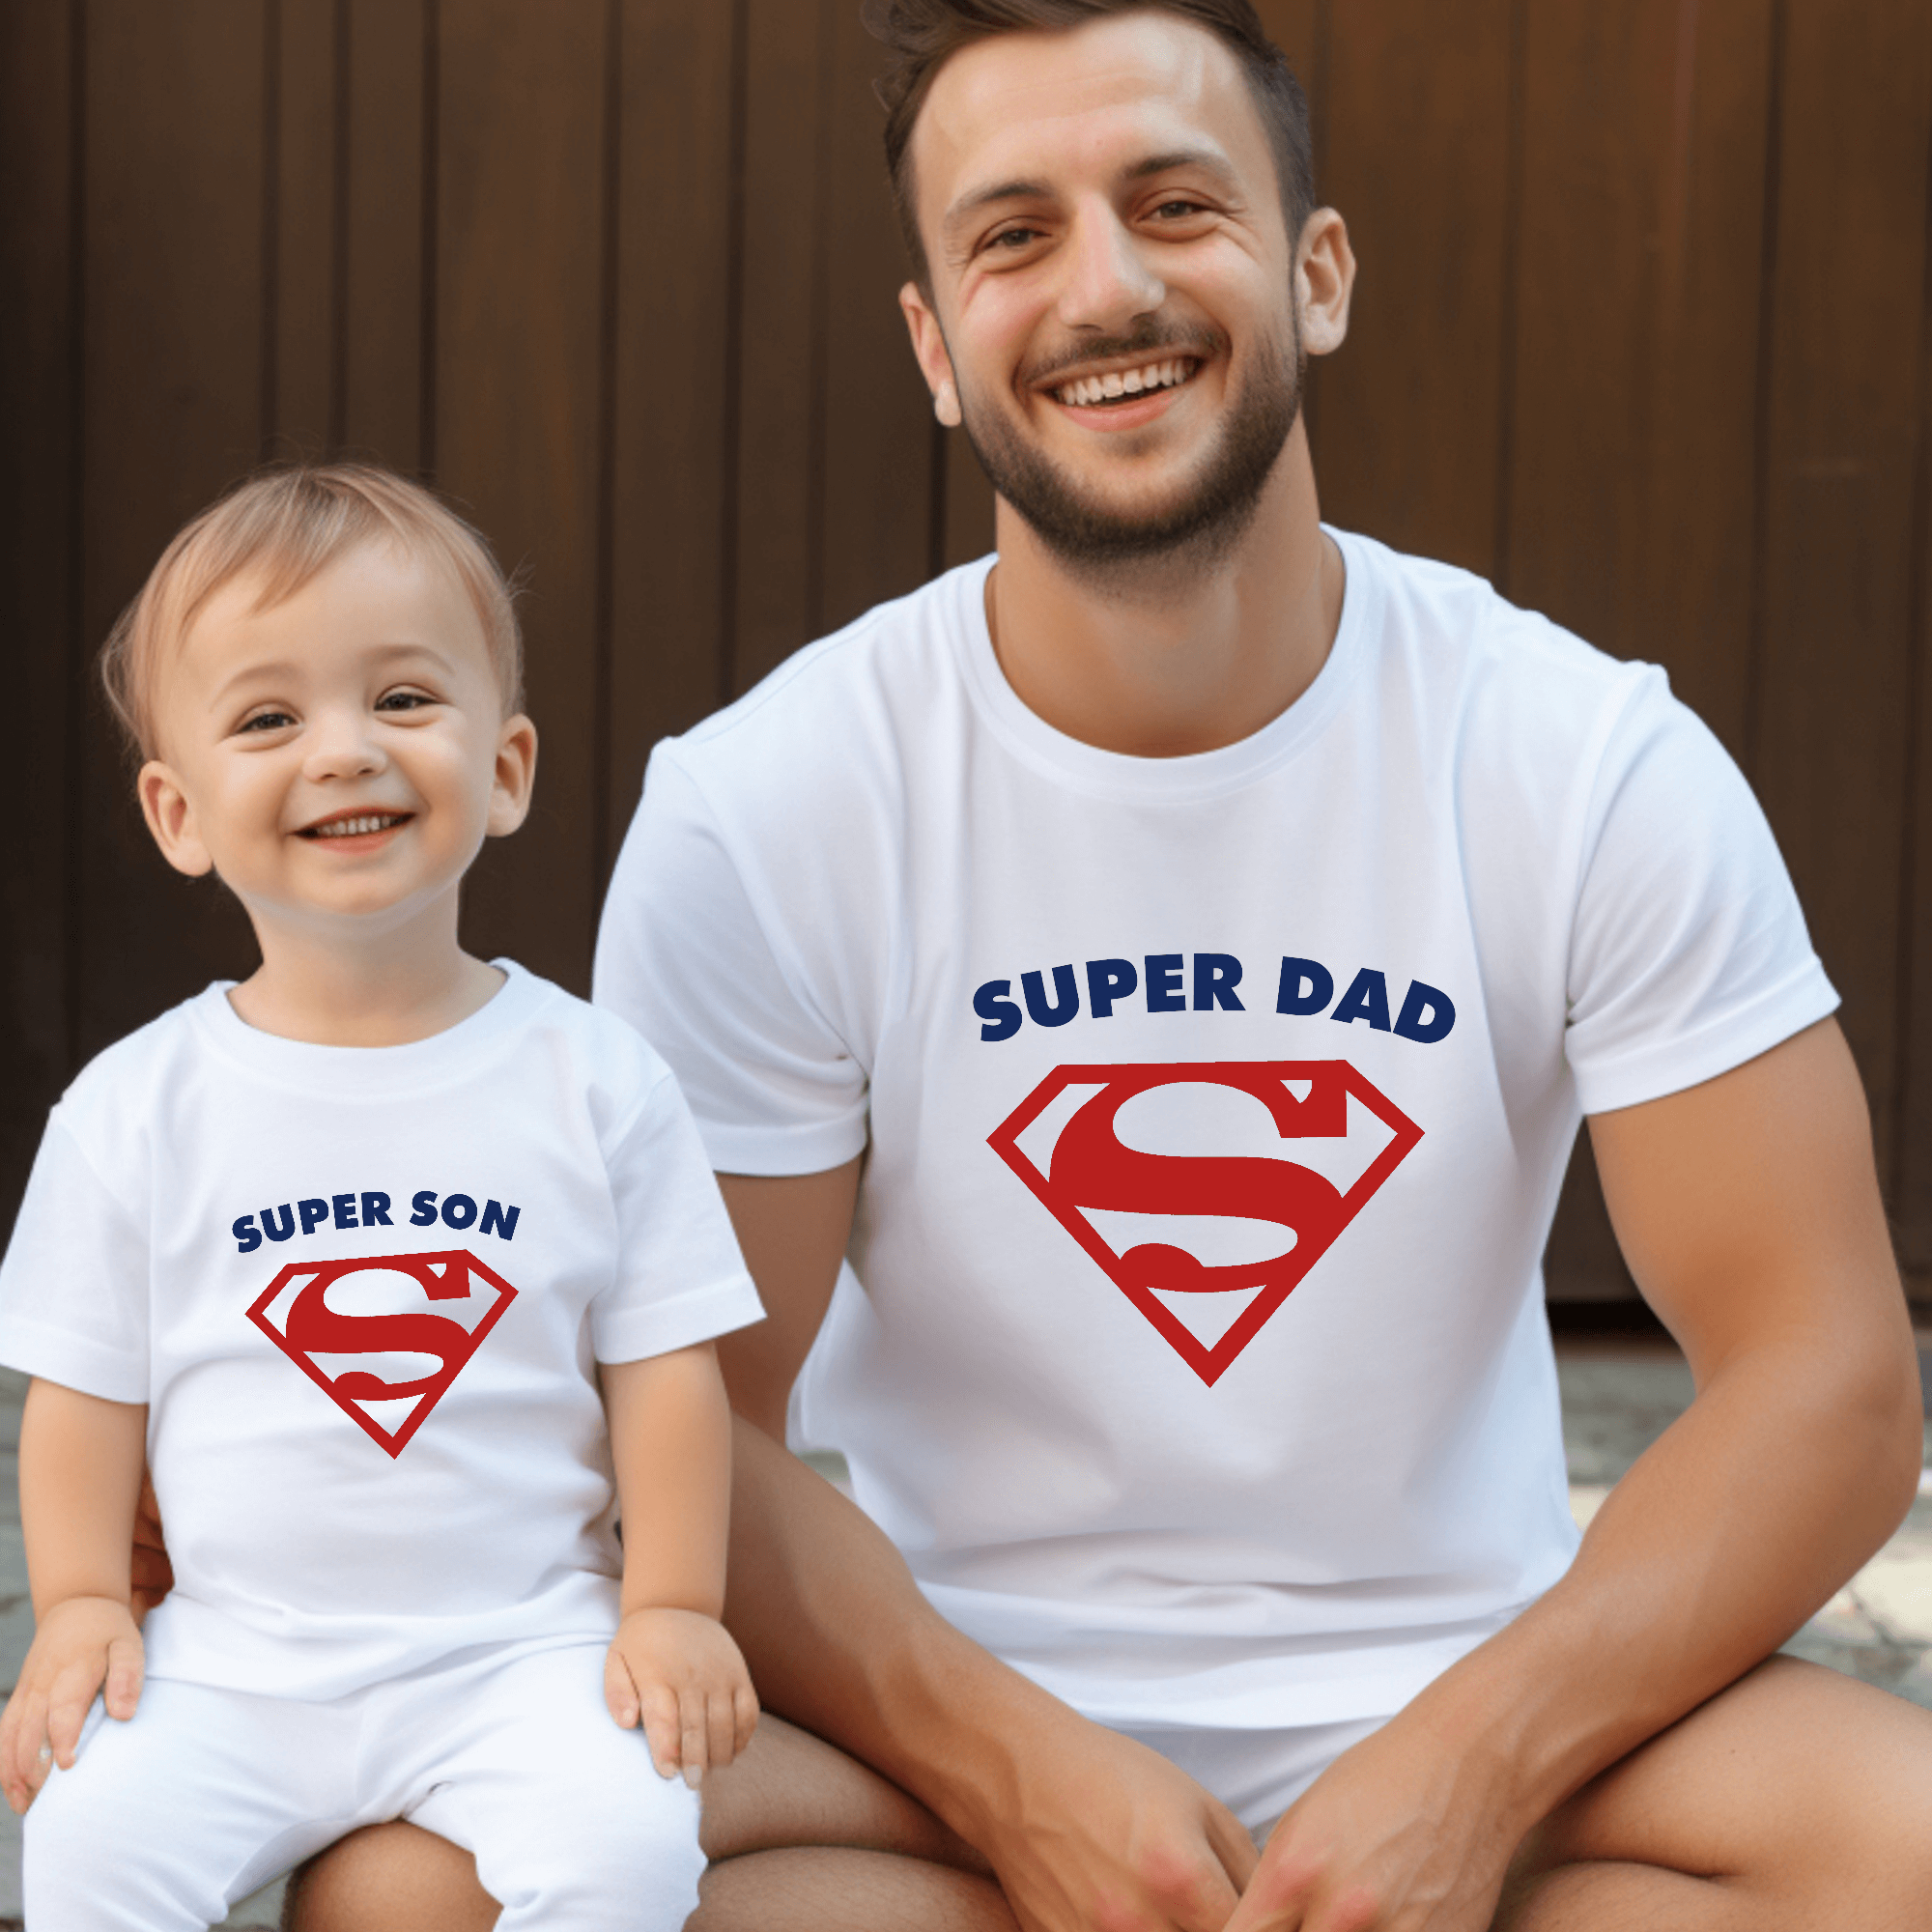 Superidade T -Shirt, mãe e crianças